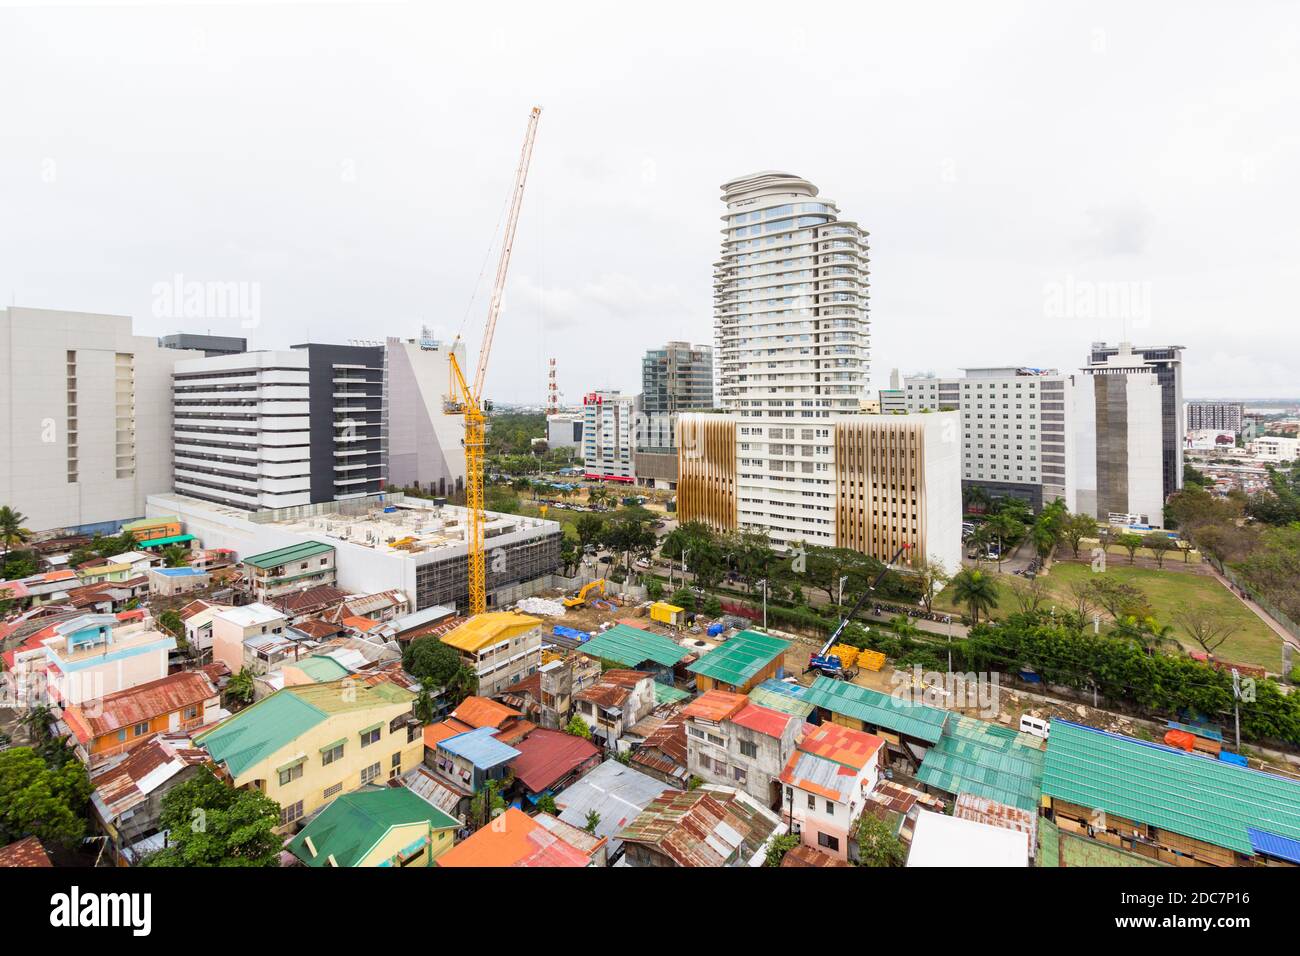 Ein Teil der städtischen Landschaft von CEU City, Philippinen Stockfoto